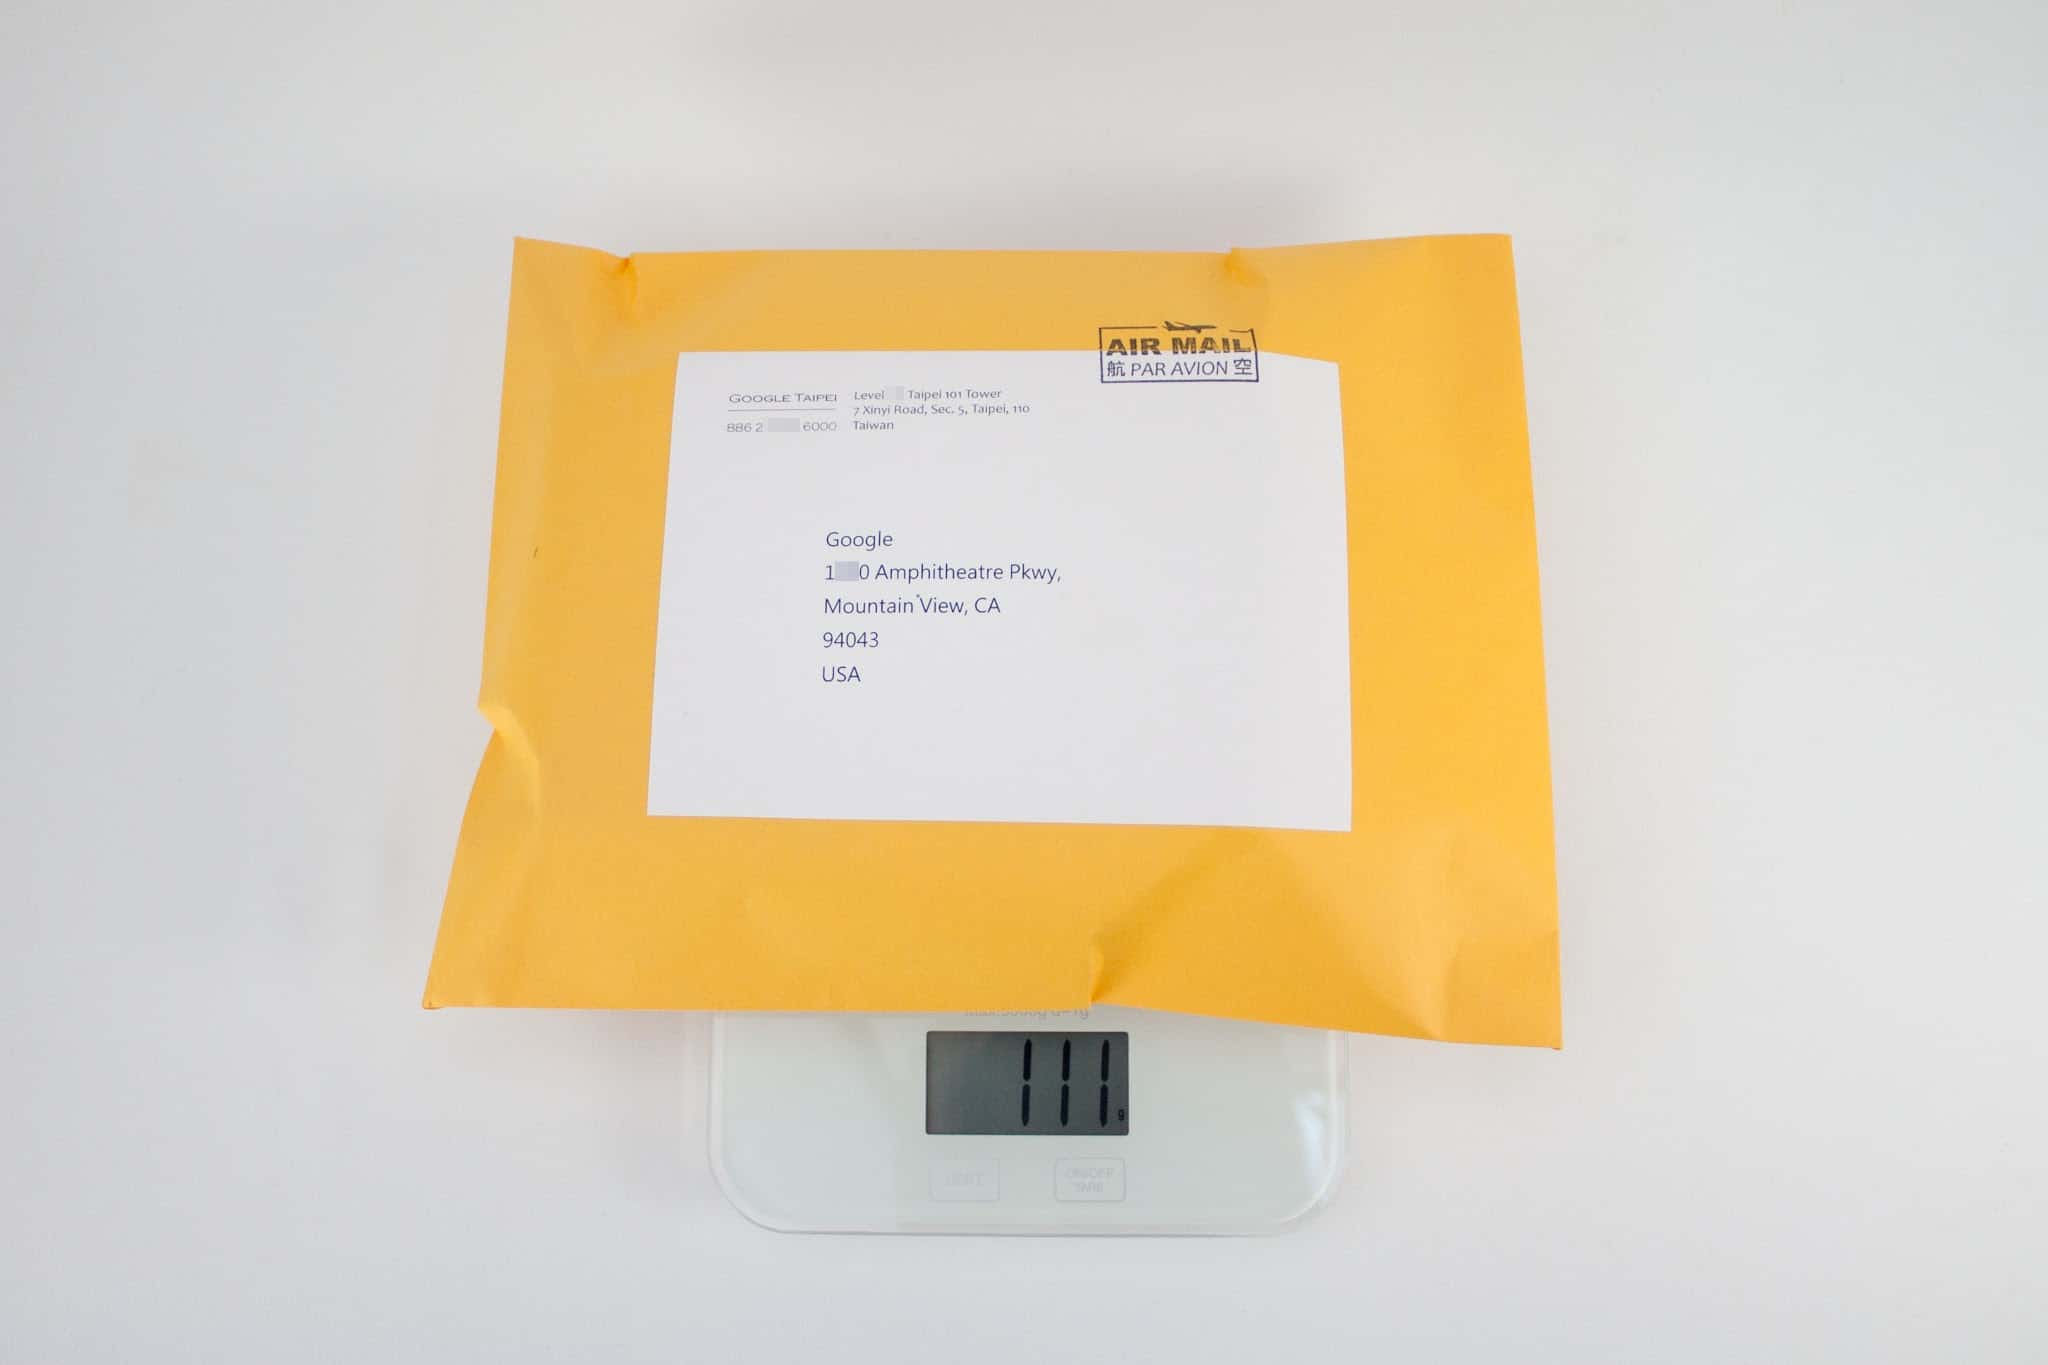 國際郵件/ 國際小包裹 書寫與寄送方式 - 重量計算